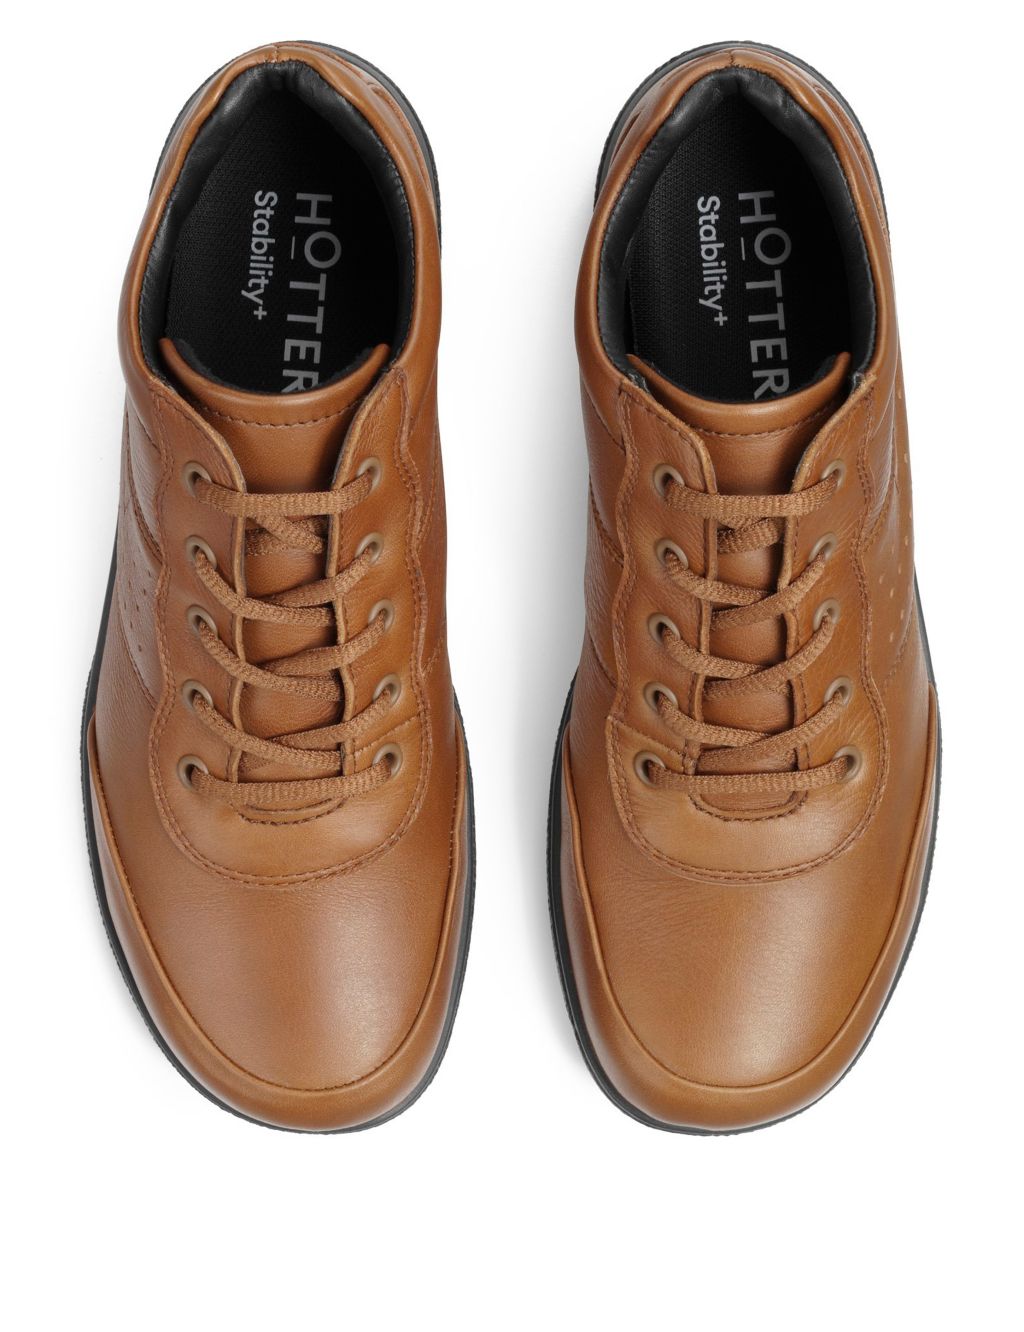 Ellery III Leather Flat Boots image 4